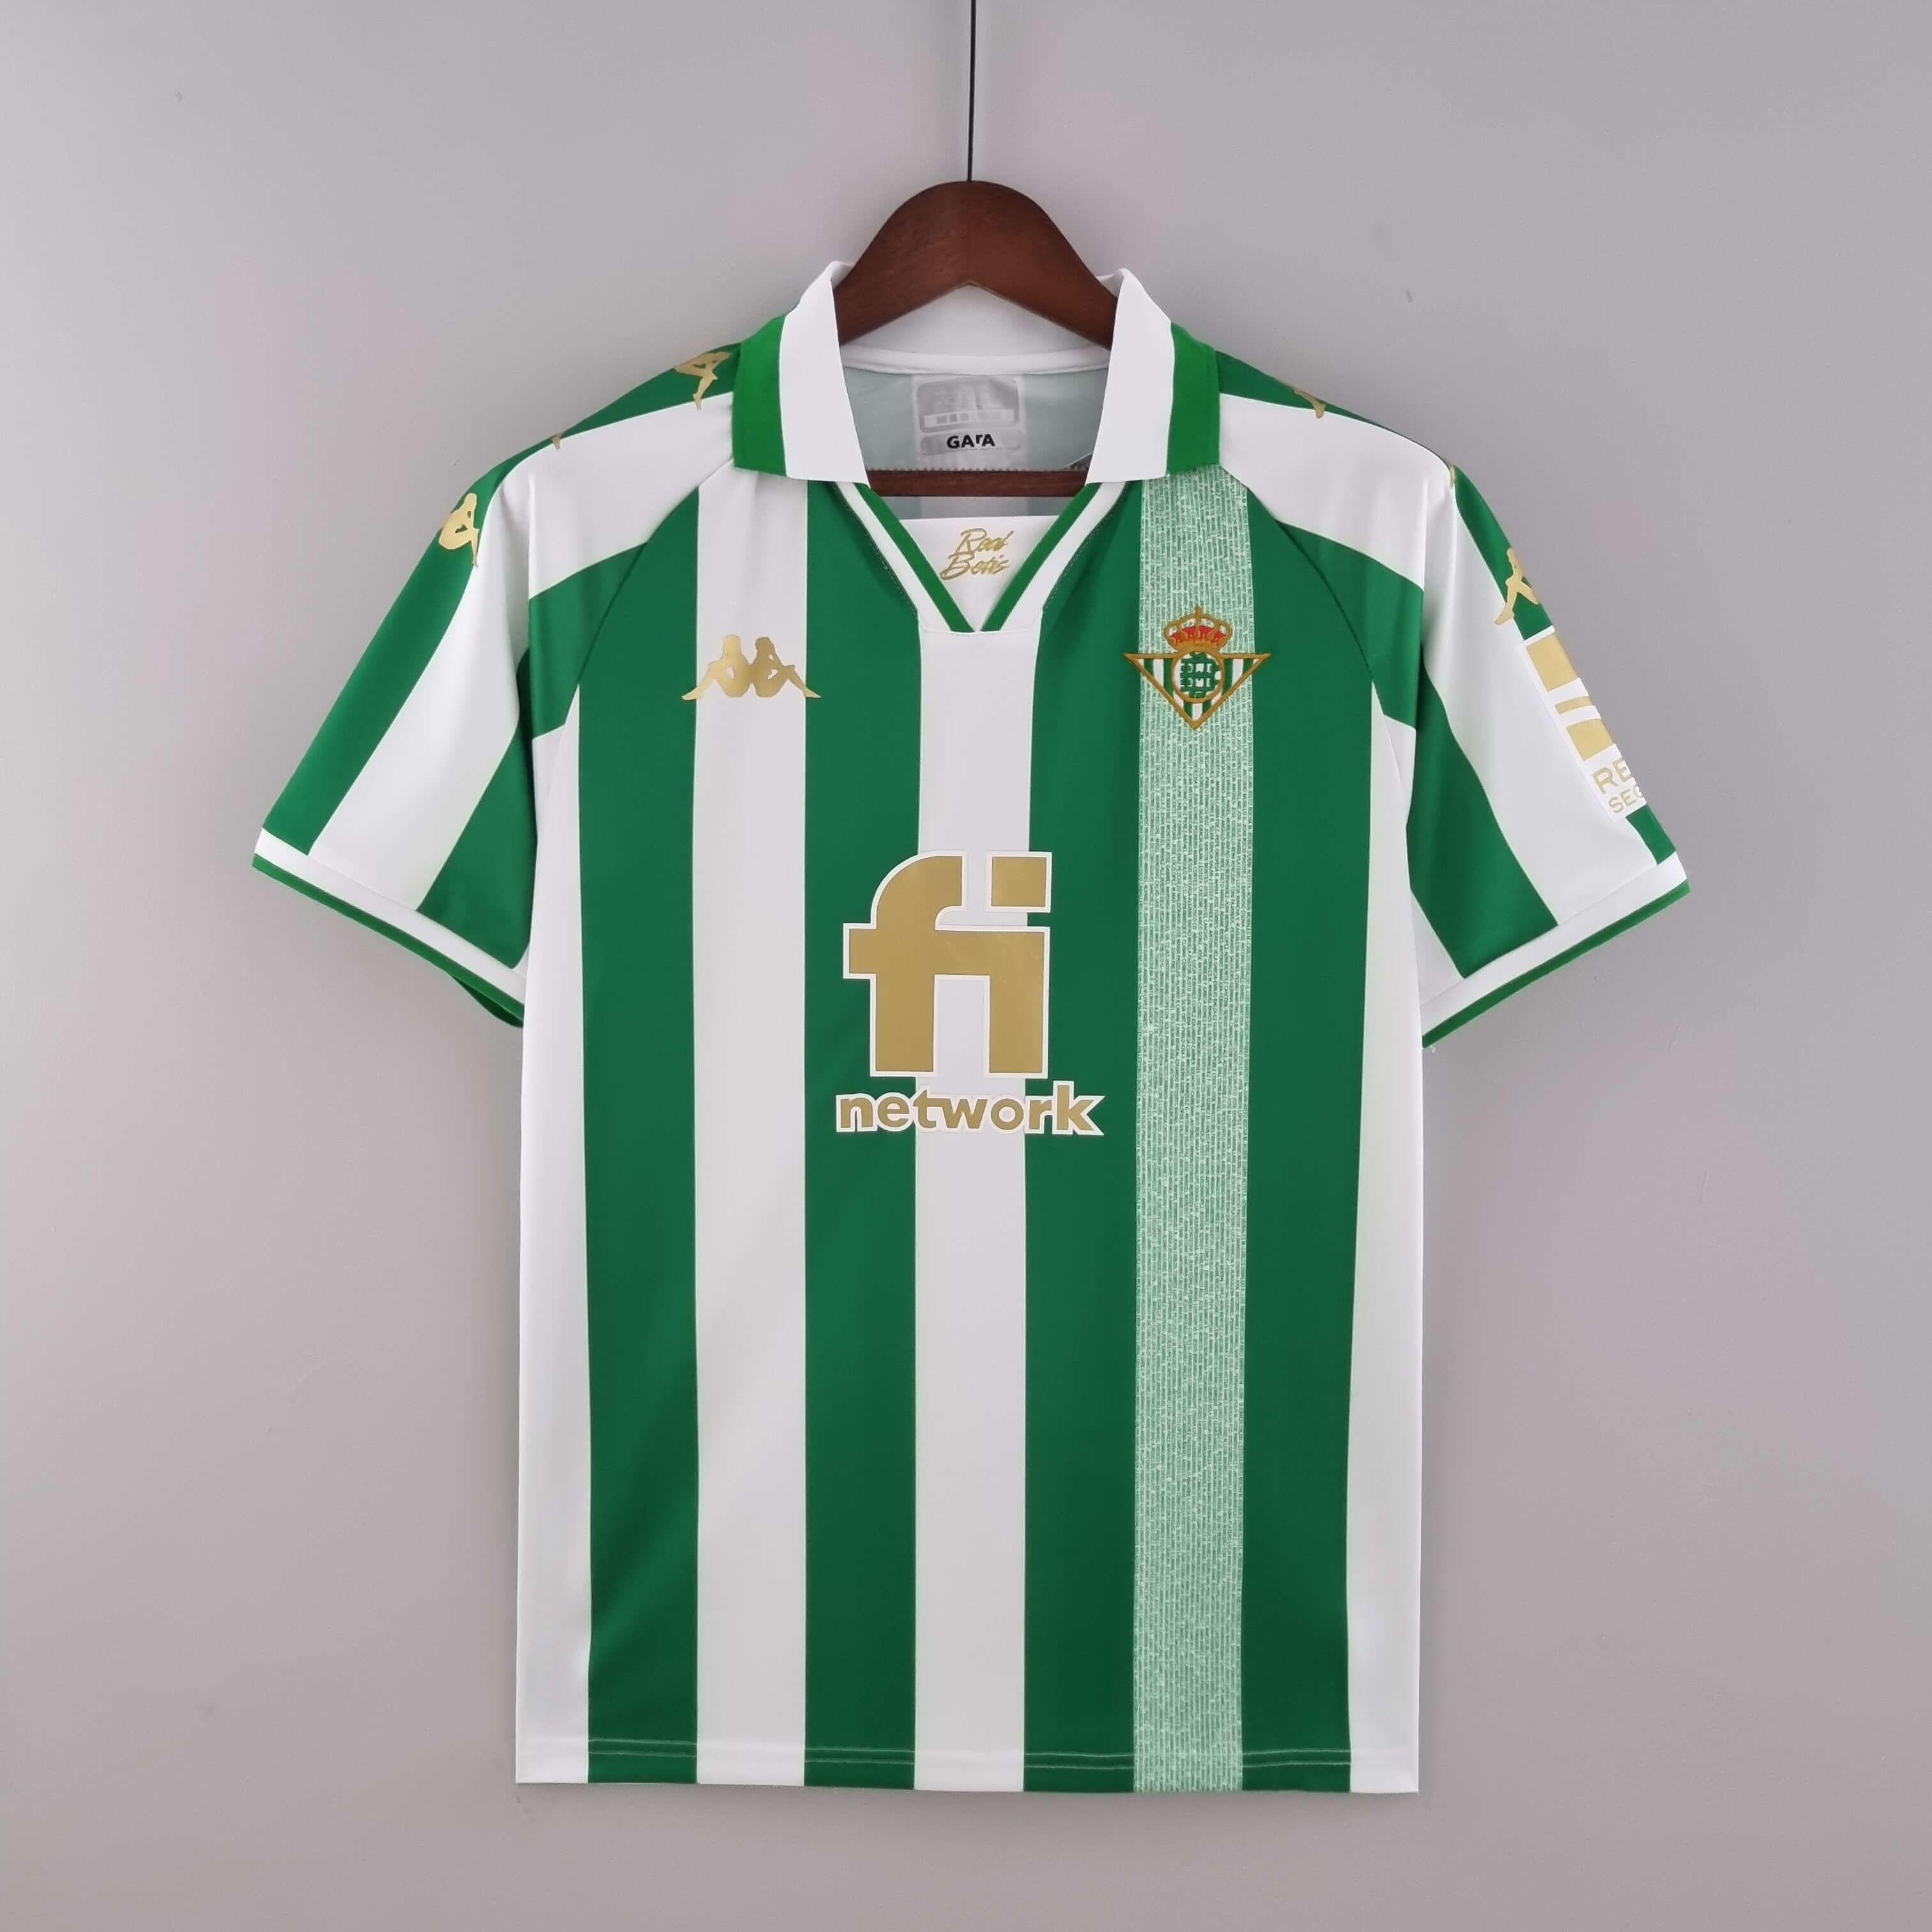 Opresor Prima lanza Camiseta 4a Betis Final Copa del Rey 2022 [RB_564103] - €19.90 :